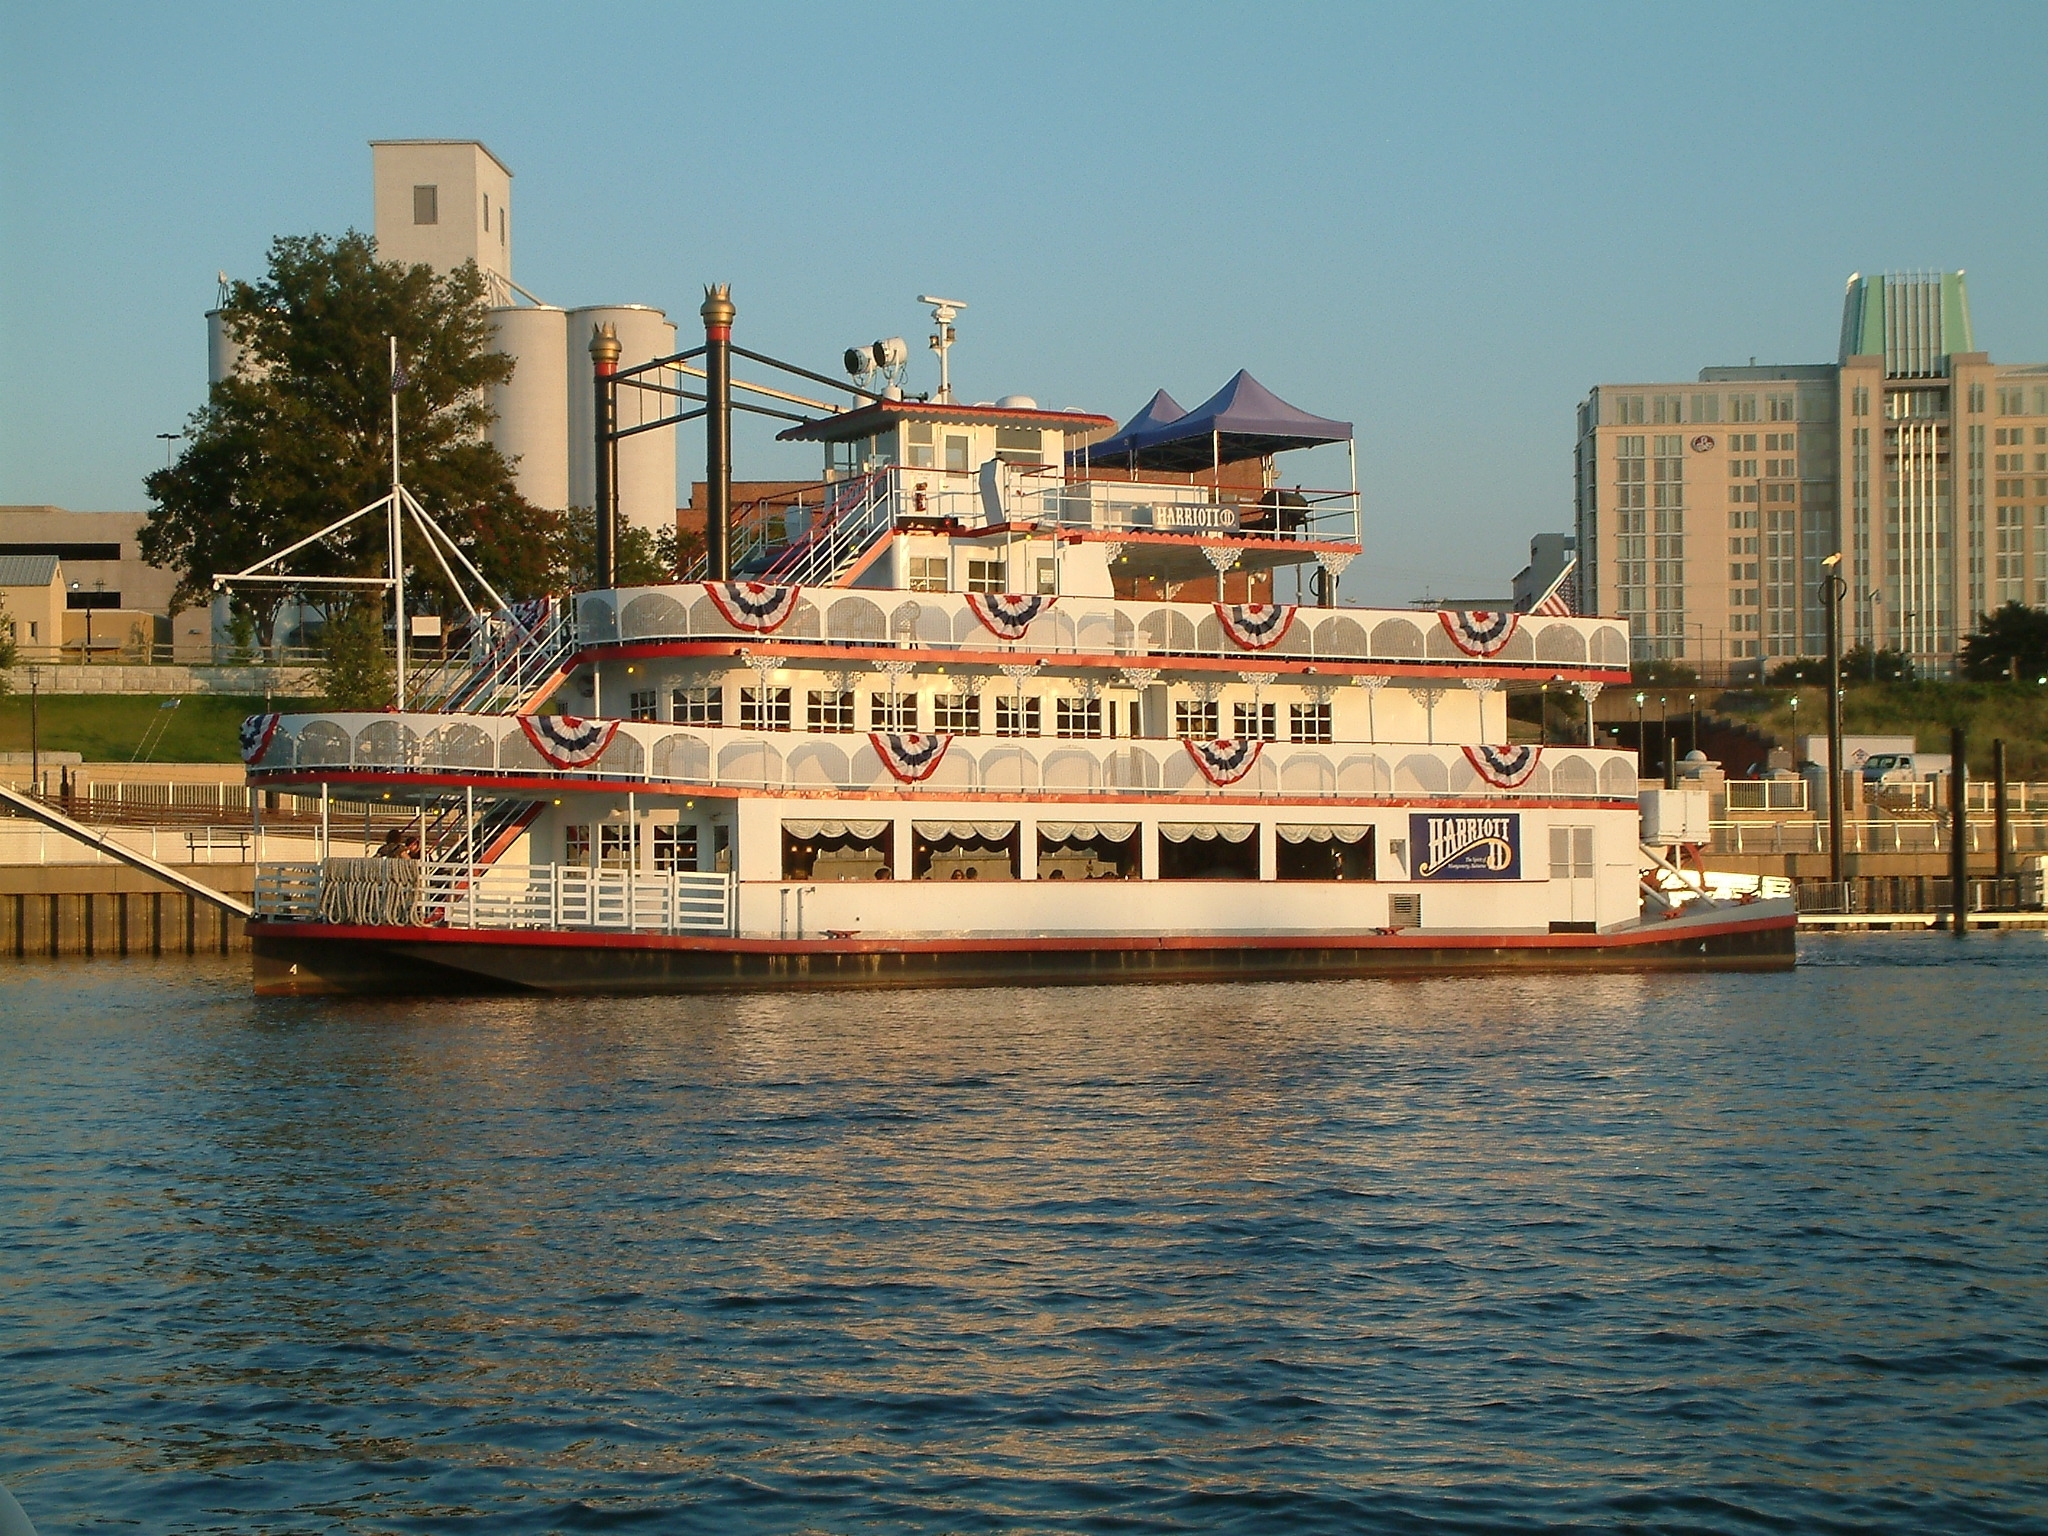 Harriott II Riverboat